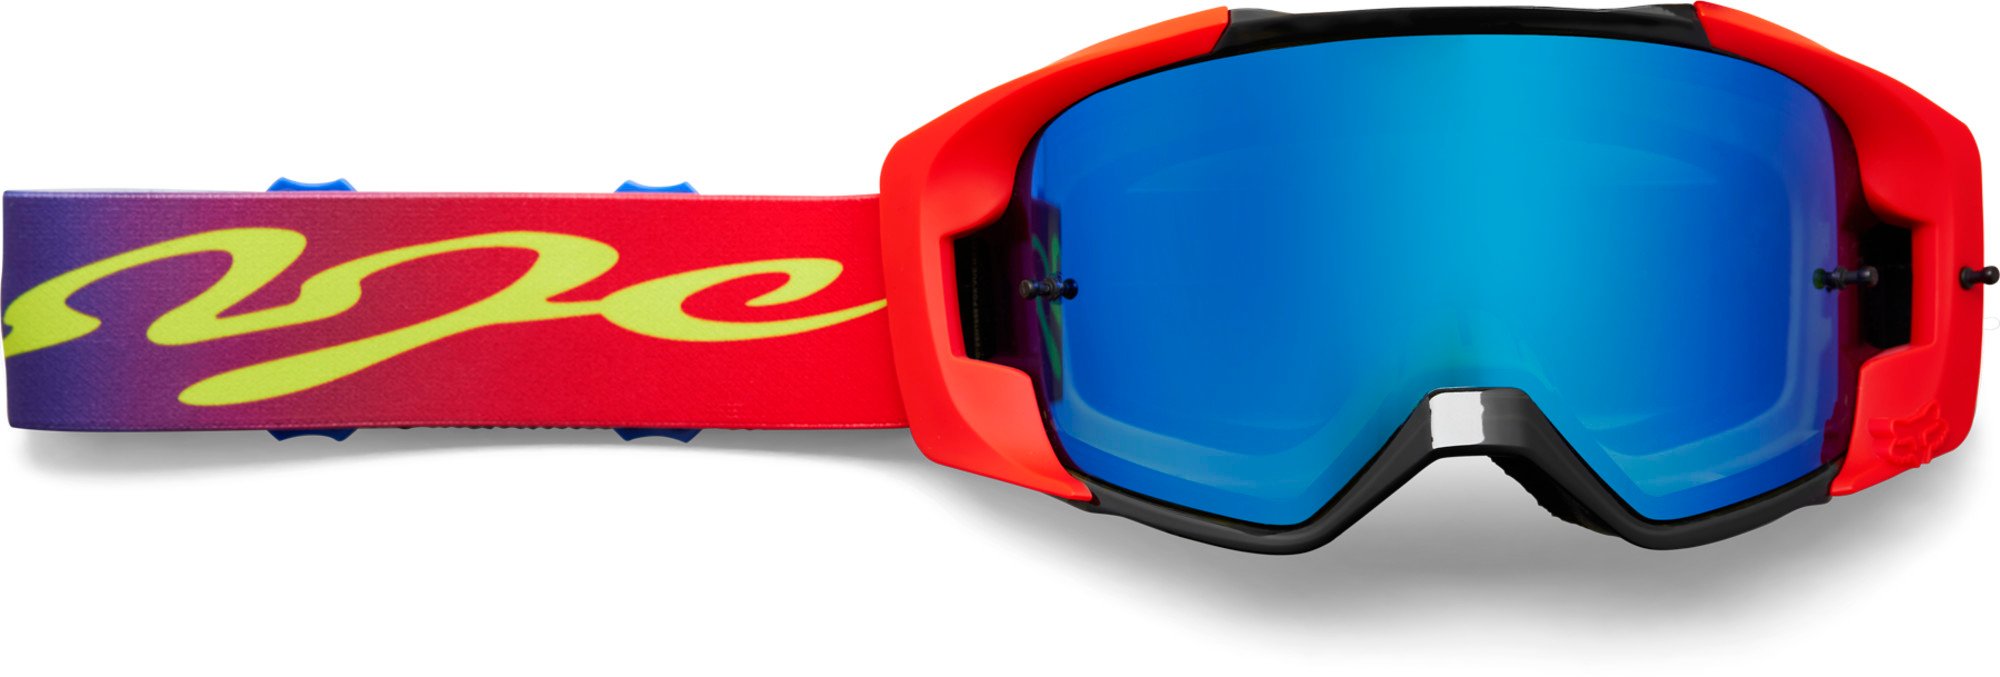 motocross lunettes & lentilles par fox racing adult vue dkay spark